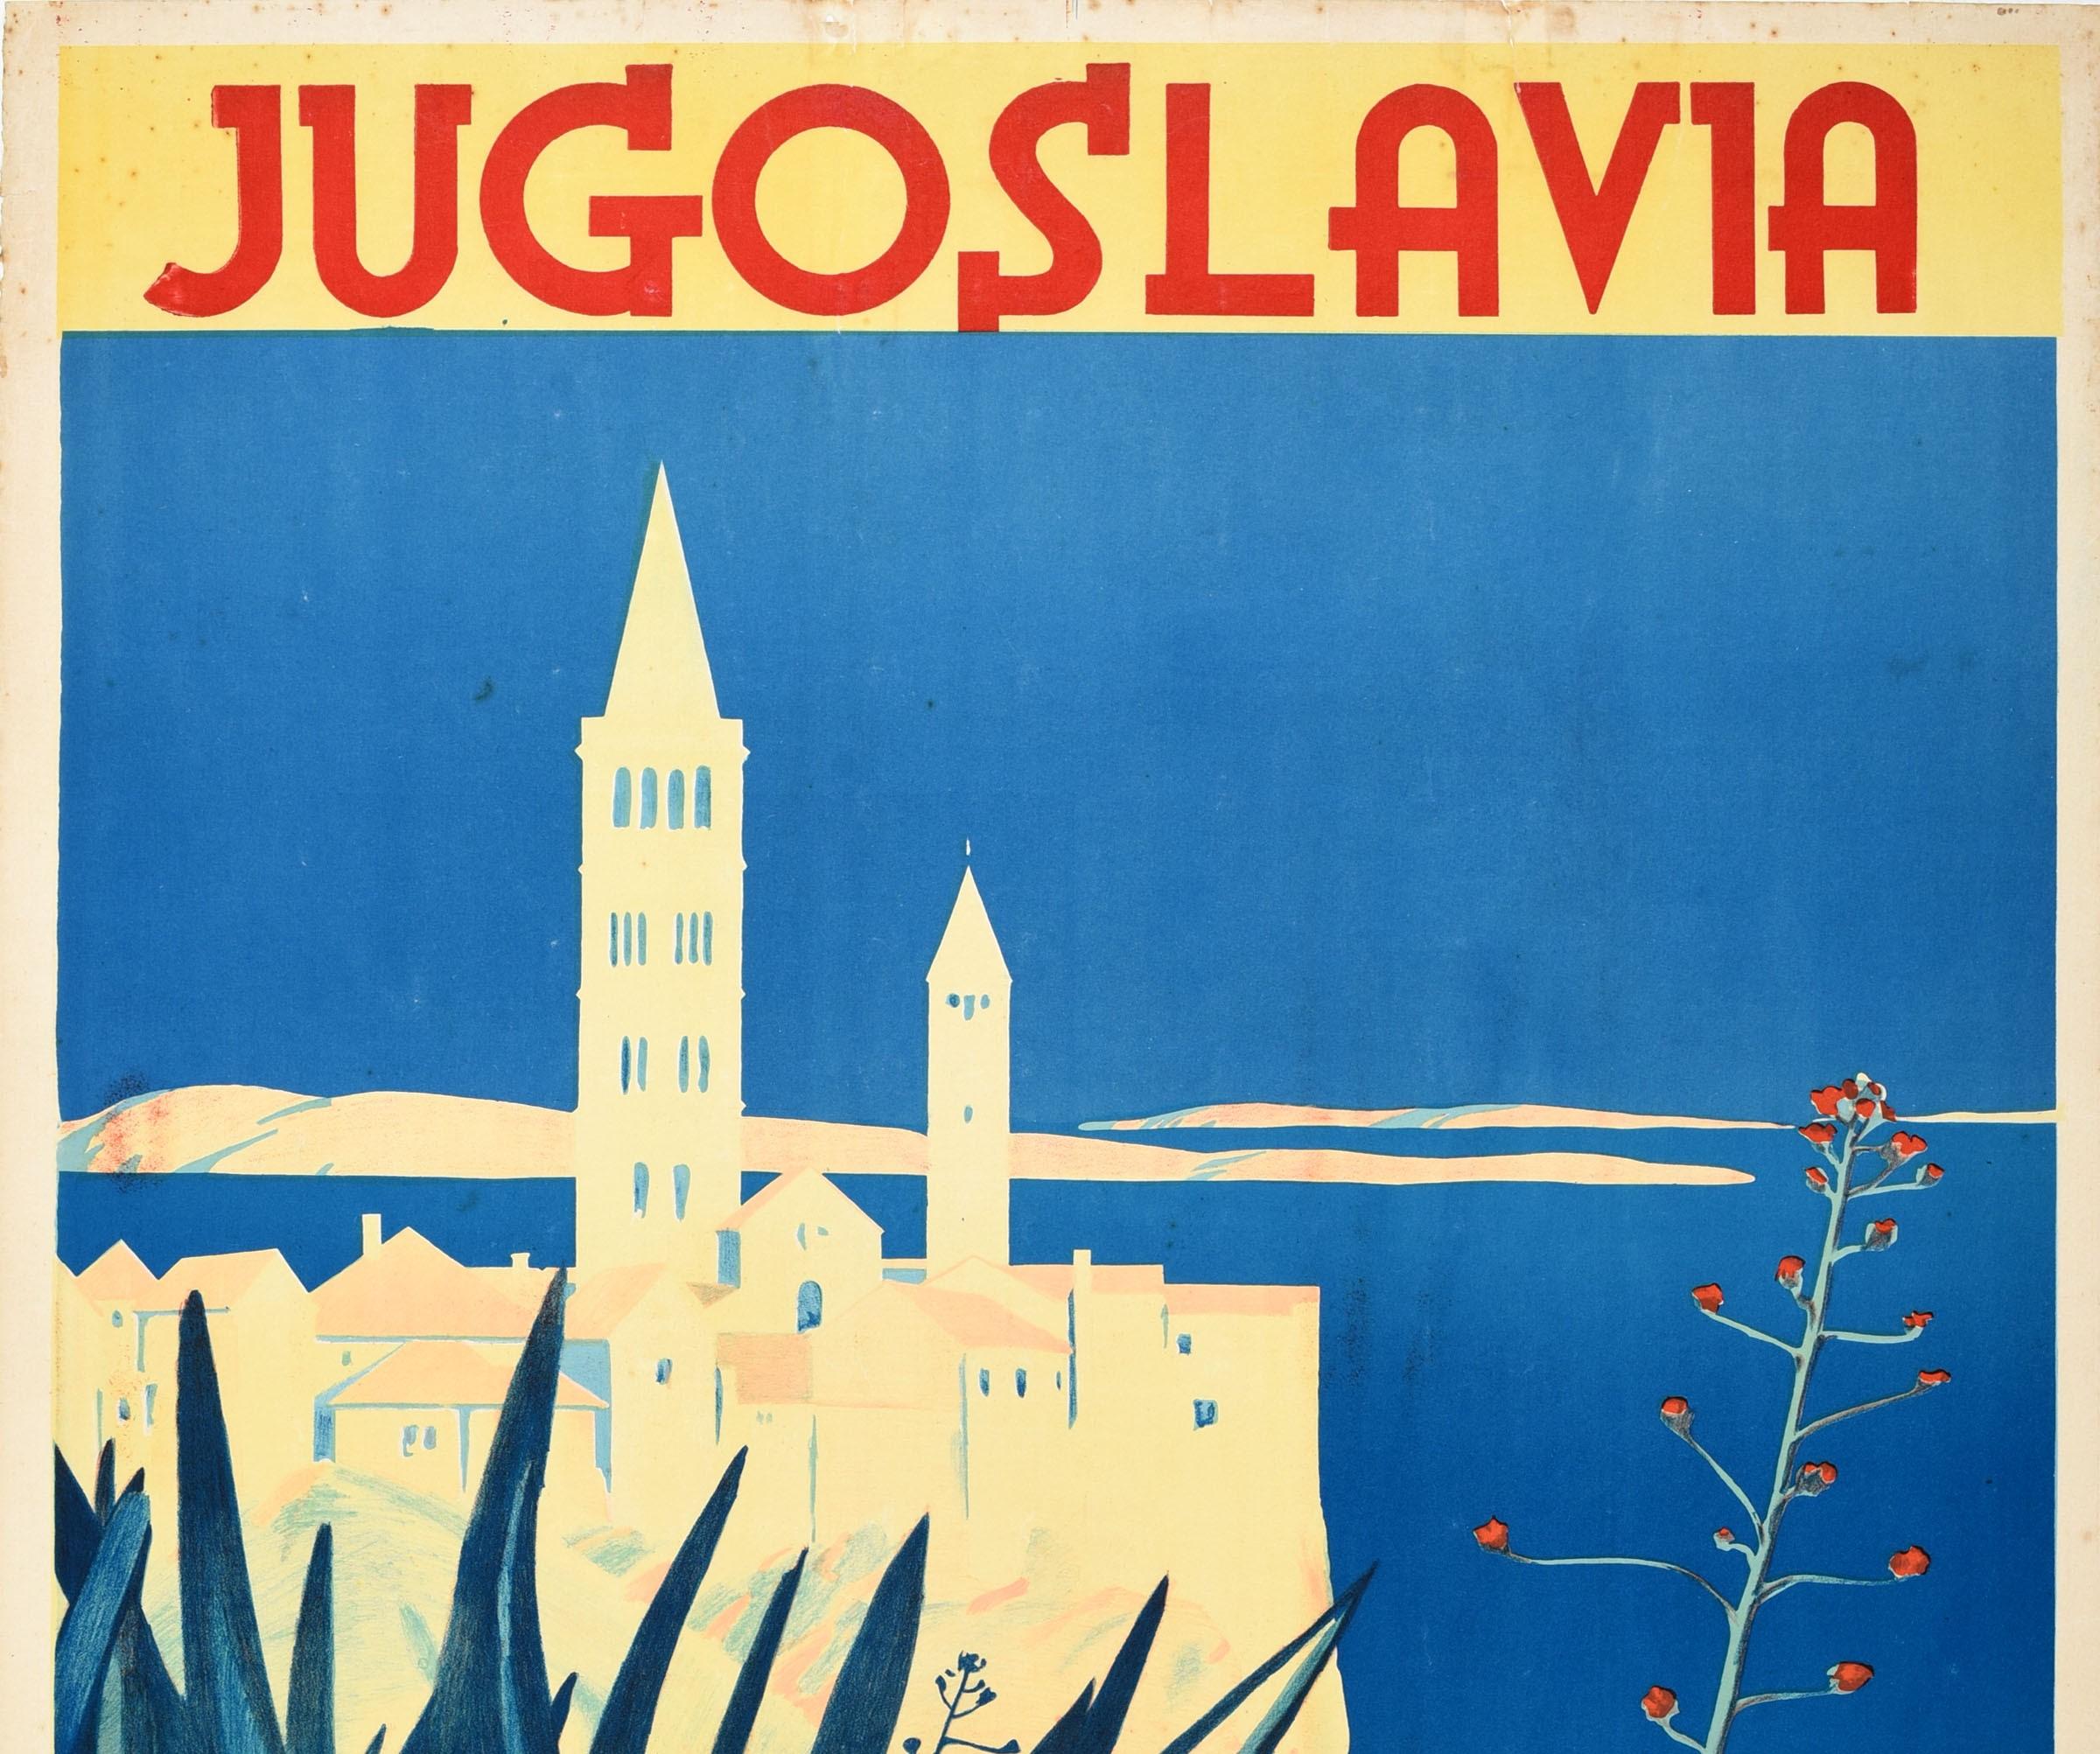 Originales Vintage-Reiseplakat für Putnik Jugoslawien / Jugoslawien mit einer atemberaubenden Ansicht der historischen Gebäude über dem blauen Meer mit Hügeln in der Ferne und Pflanzen im Vordergrund, dem fetten roten Titeltext und Informationen auf